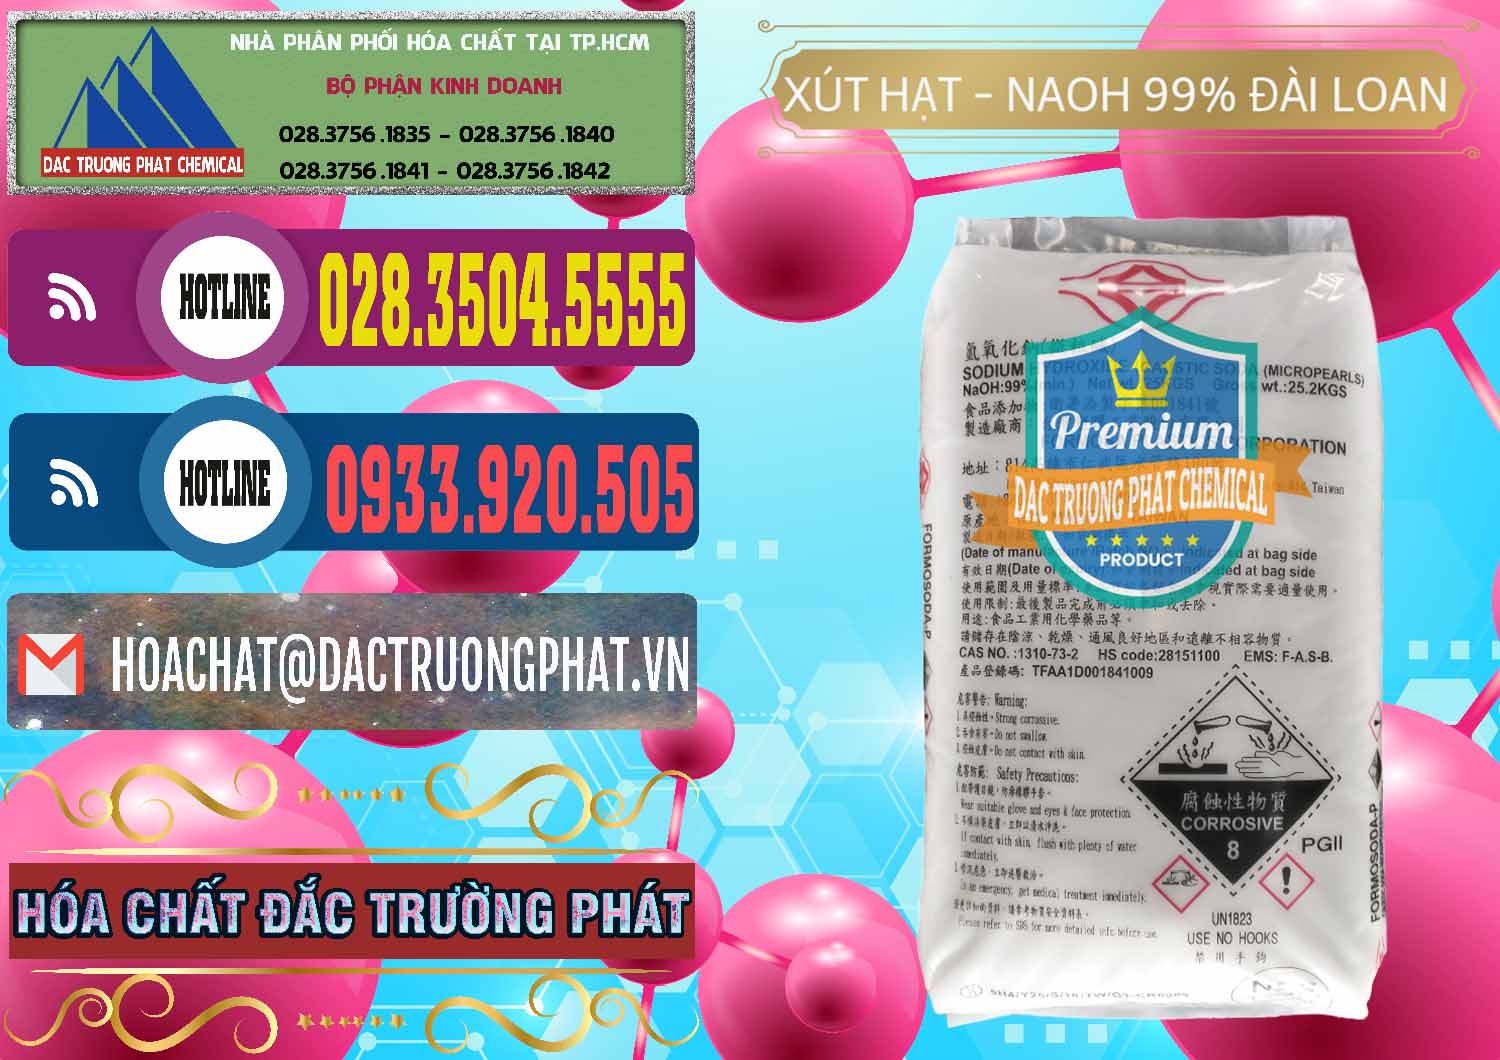 Chuyên phân phối và bán Xút Hạt - NaOH Bột 99% Đài Loan Taiwan Formosa - 0167 - Cty chuyên phân phối - kinh doanh hóa chất tại TP.HCM - muabanhoachat.com.vn